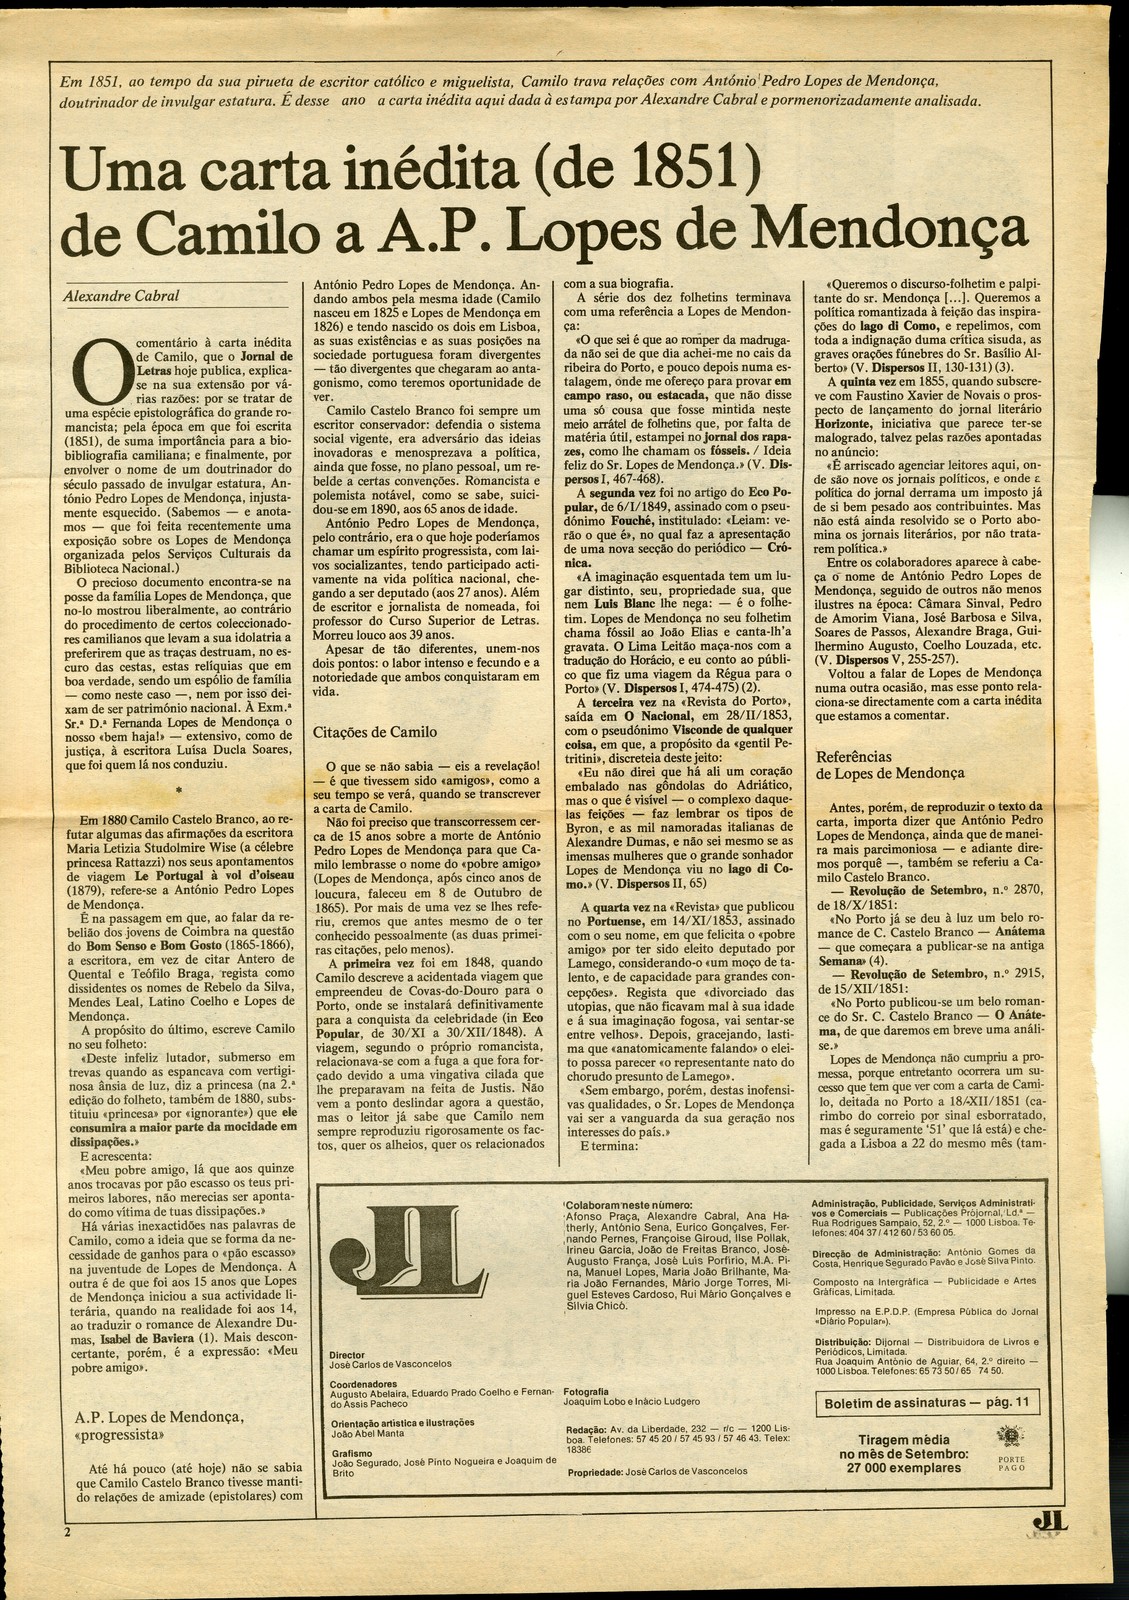 Uma carta inédita (de 1851) de Camilo a A. P. Lopes de Mendonça, por Alexandre Cabral. In Jornal ...